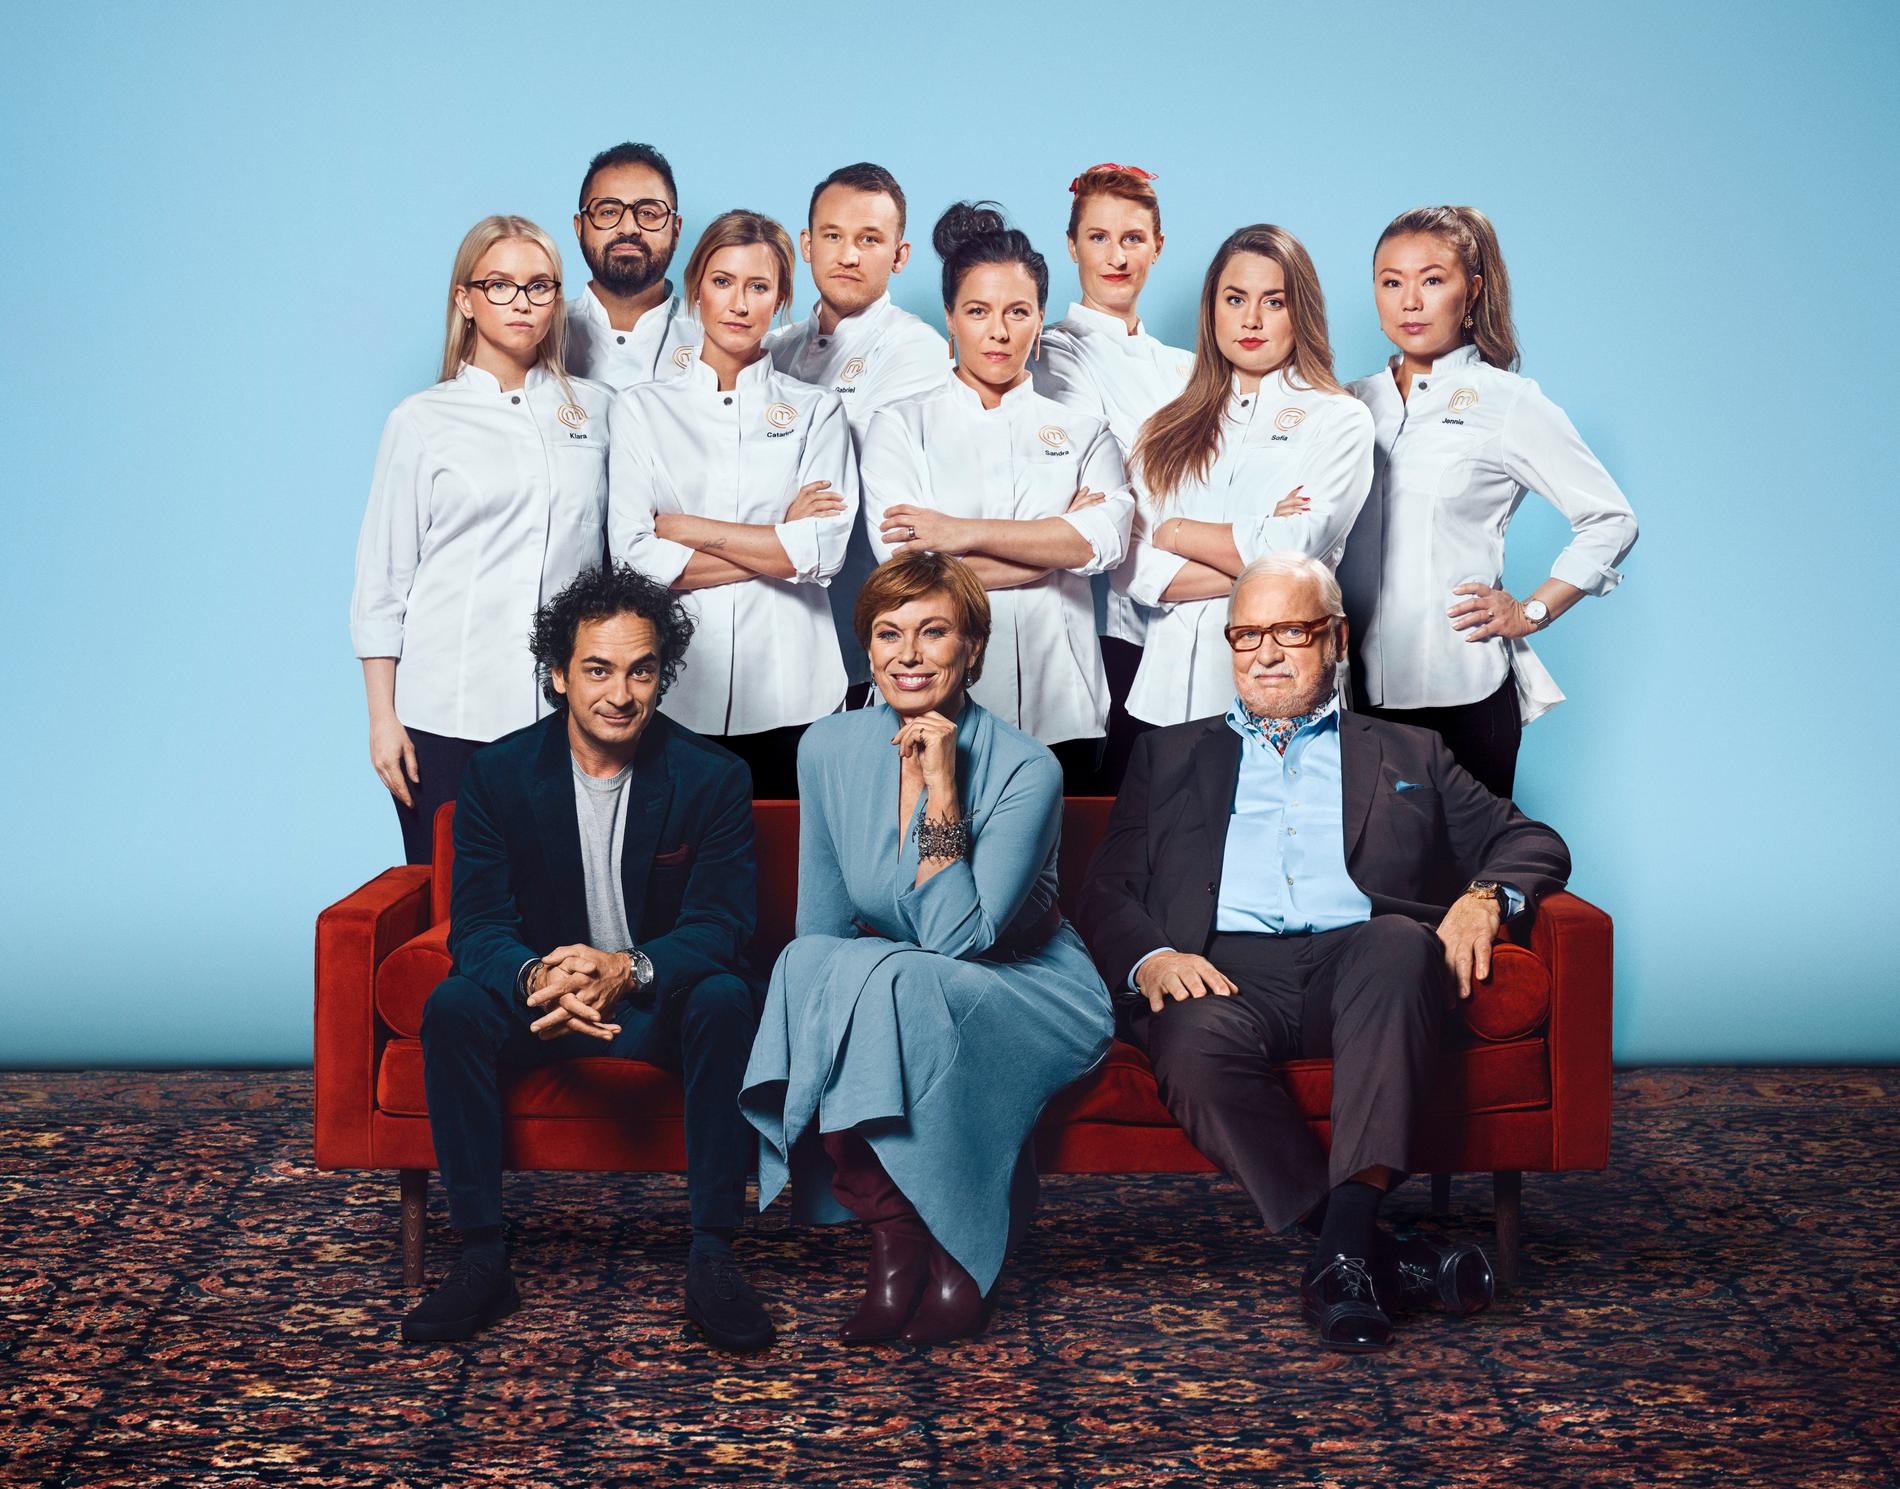 "Decenniets mästerkock", där åtta tidigare mästerkocksvinnare tävlar mot varandra, har premiär på TV4 i september.